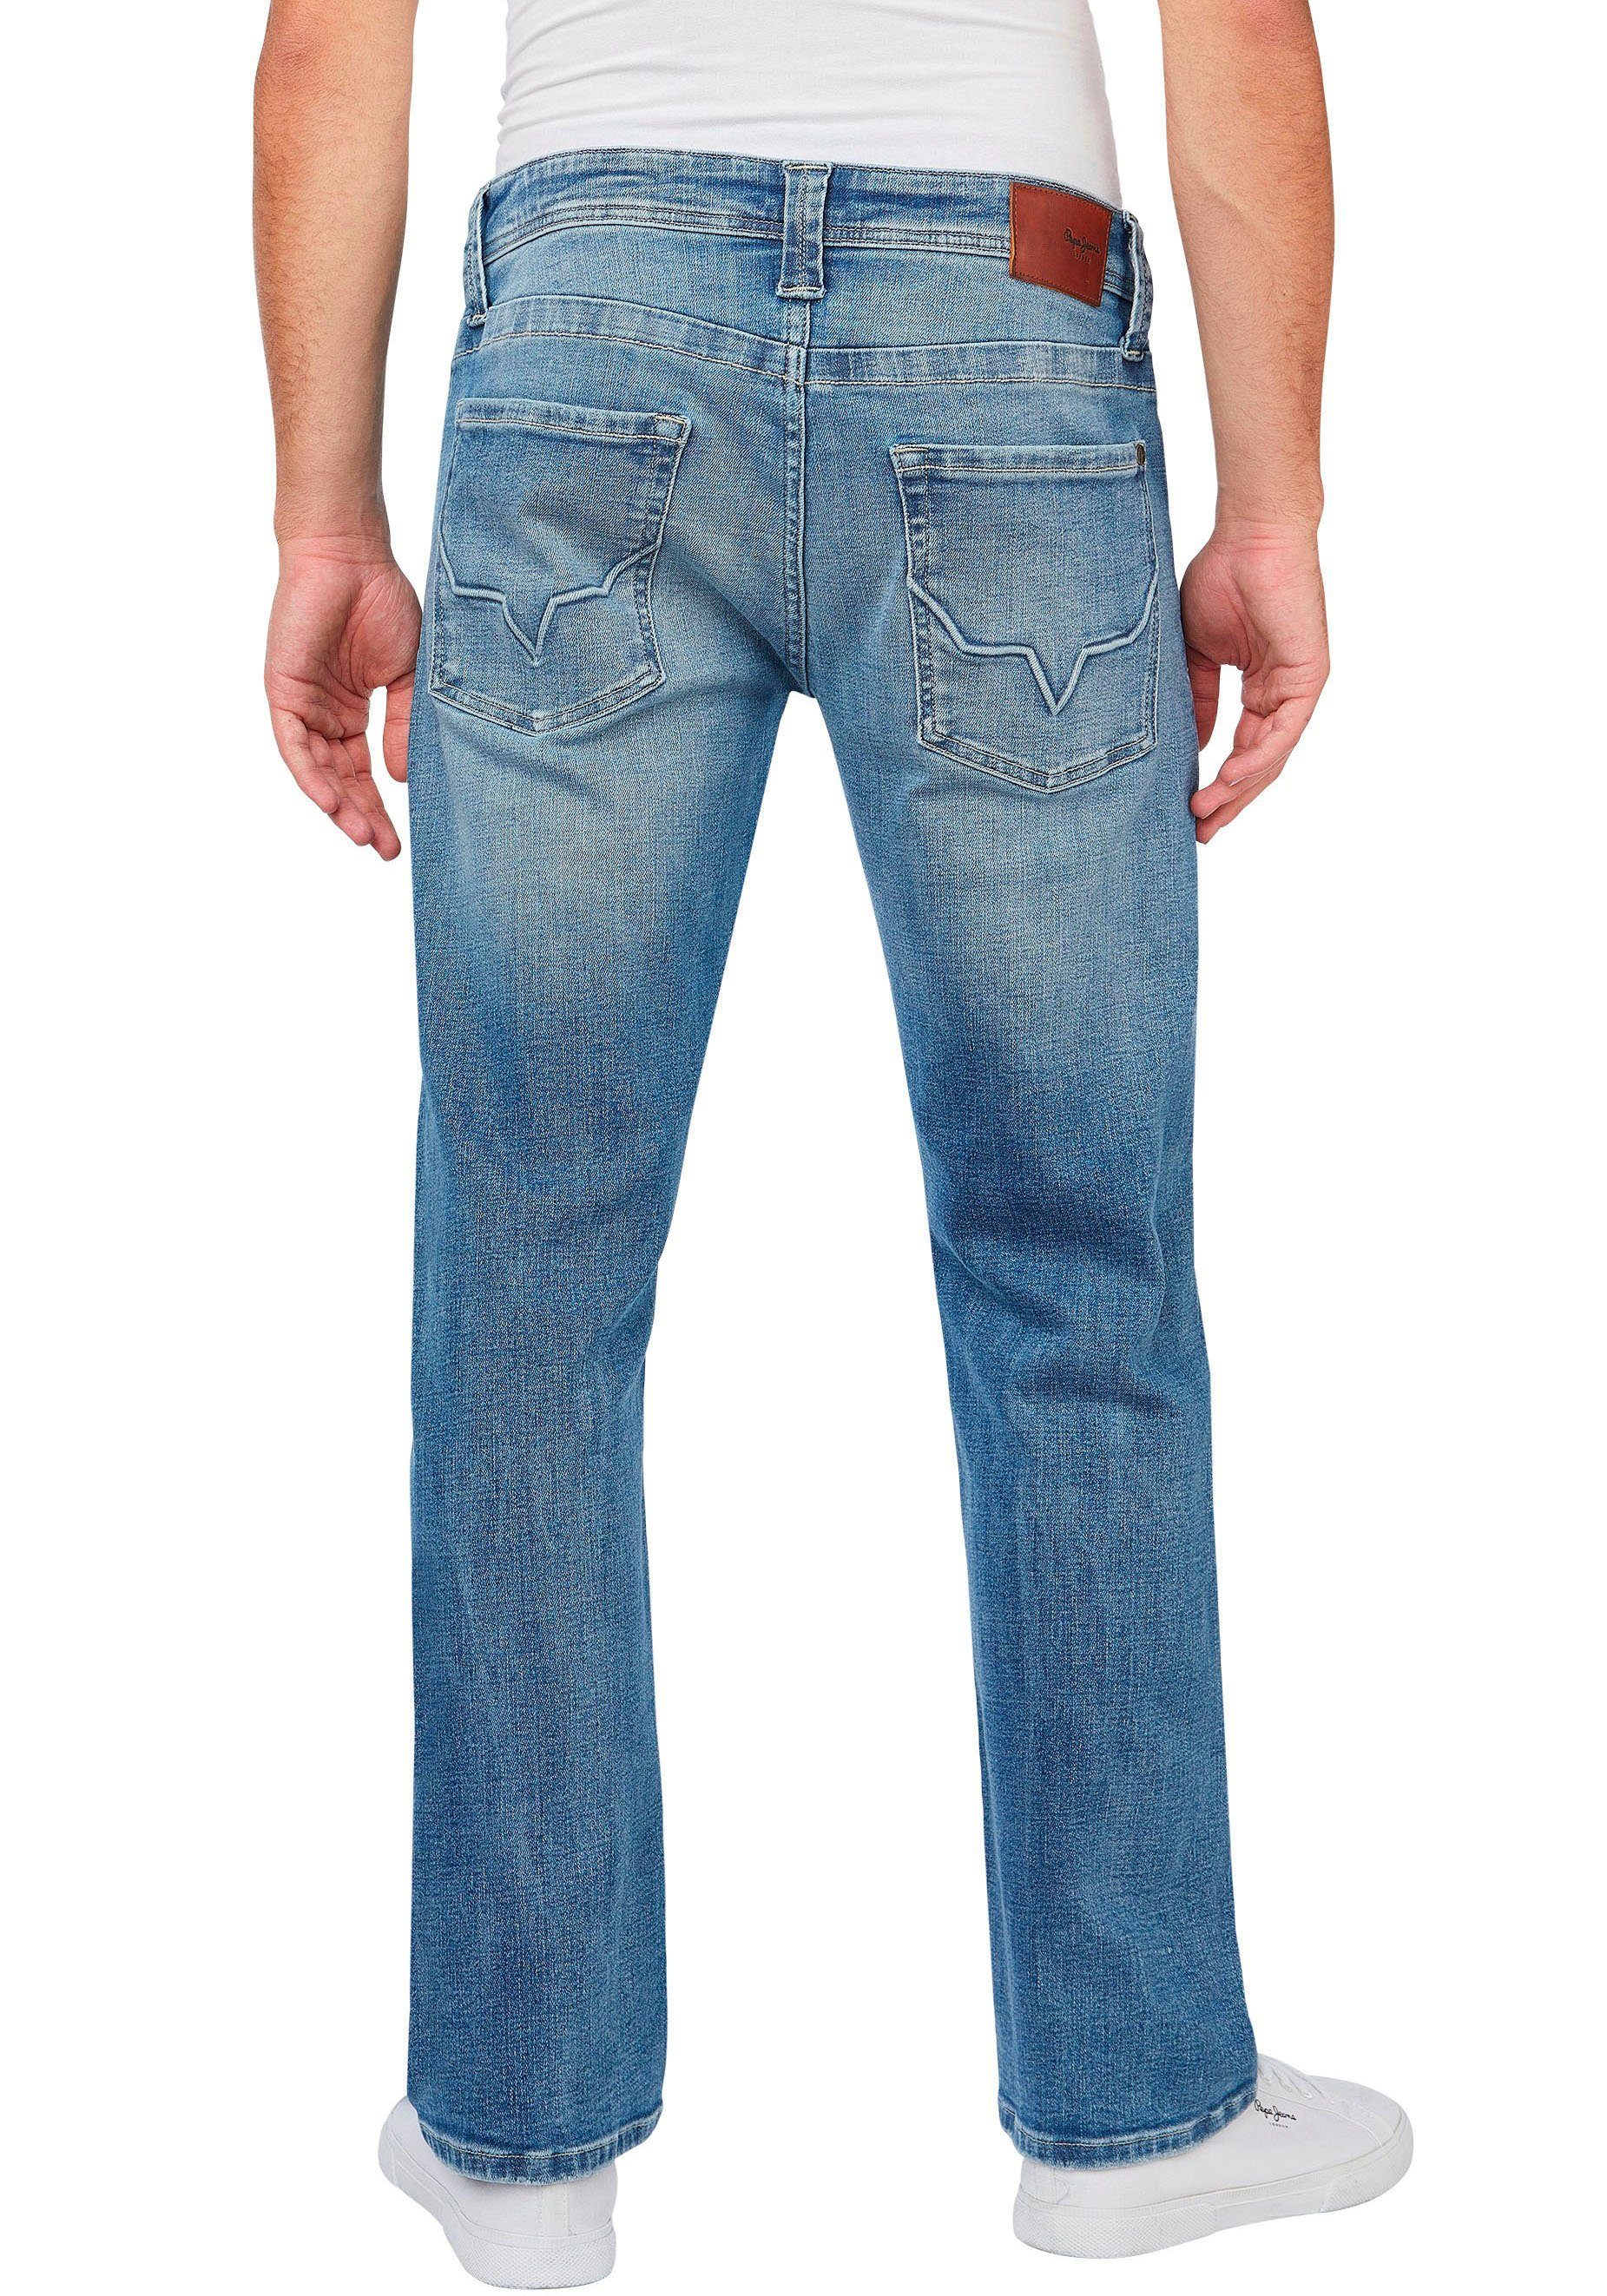 Pepe Jeans lightcross KINGSTON in ZIP 5-Pocket-Form Straight-Jeans